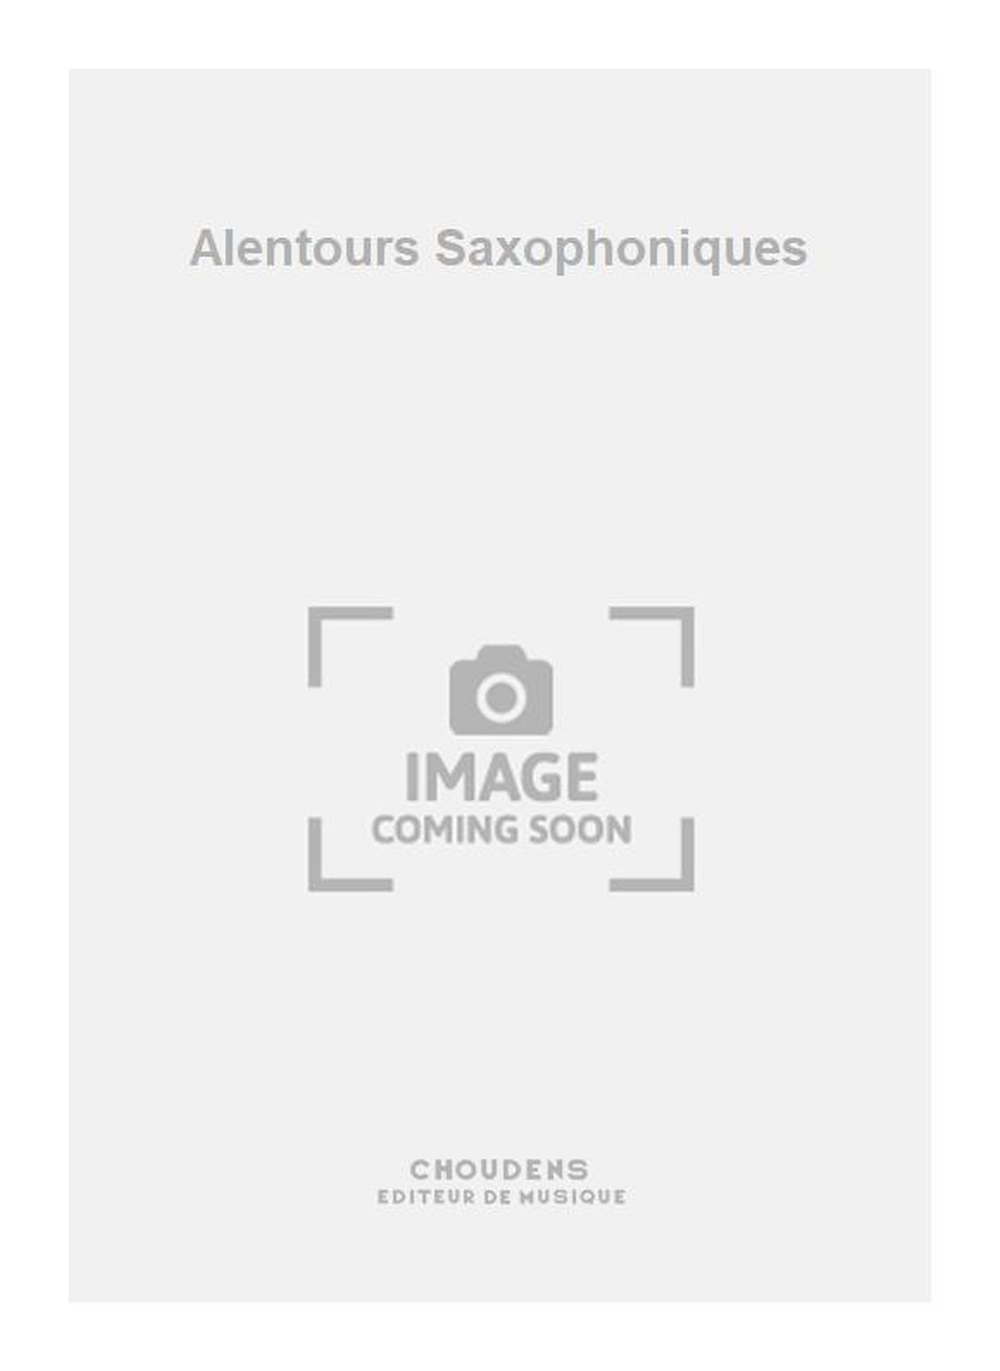 Henri Sauguet: Alentours Saxophoniques